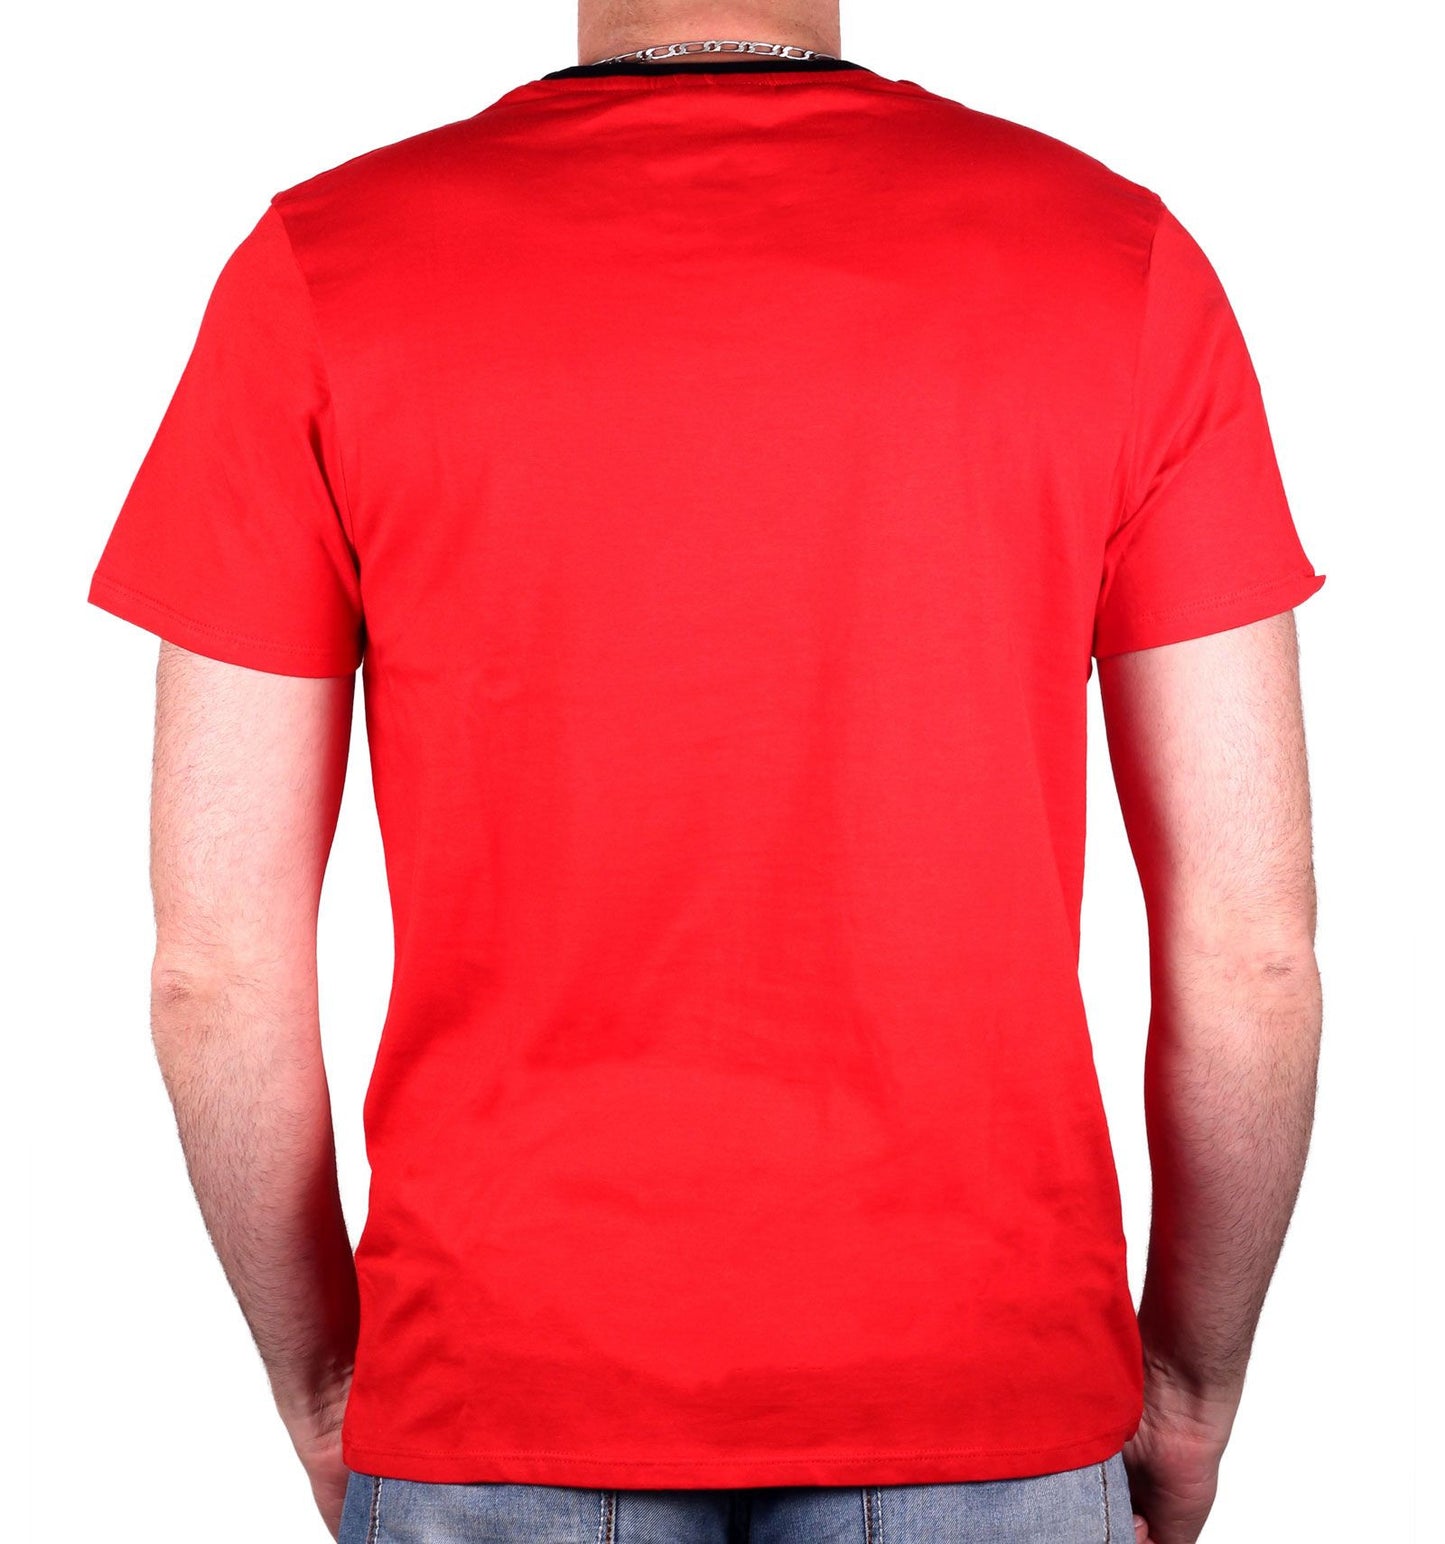 Star Trek T-Shirt - Scott Red Costume